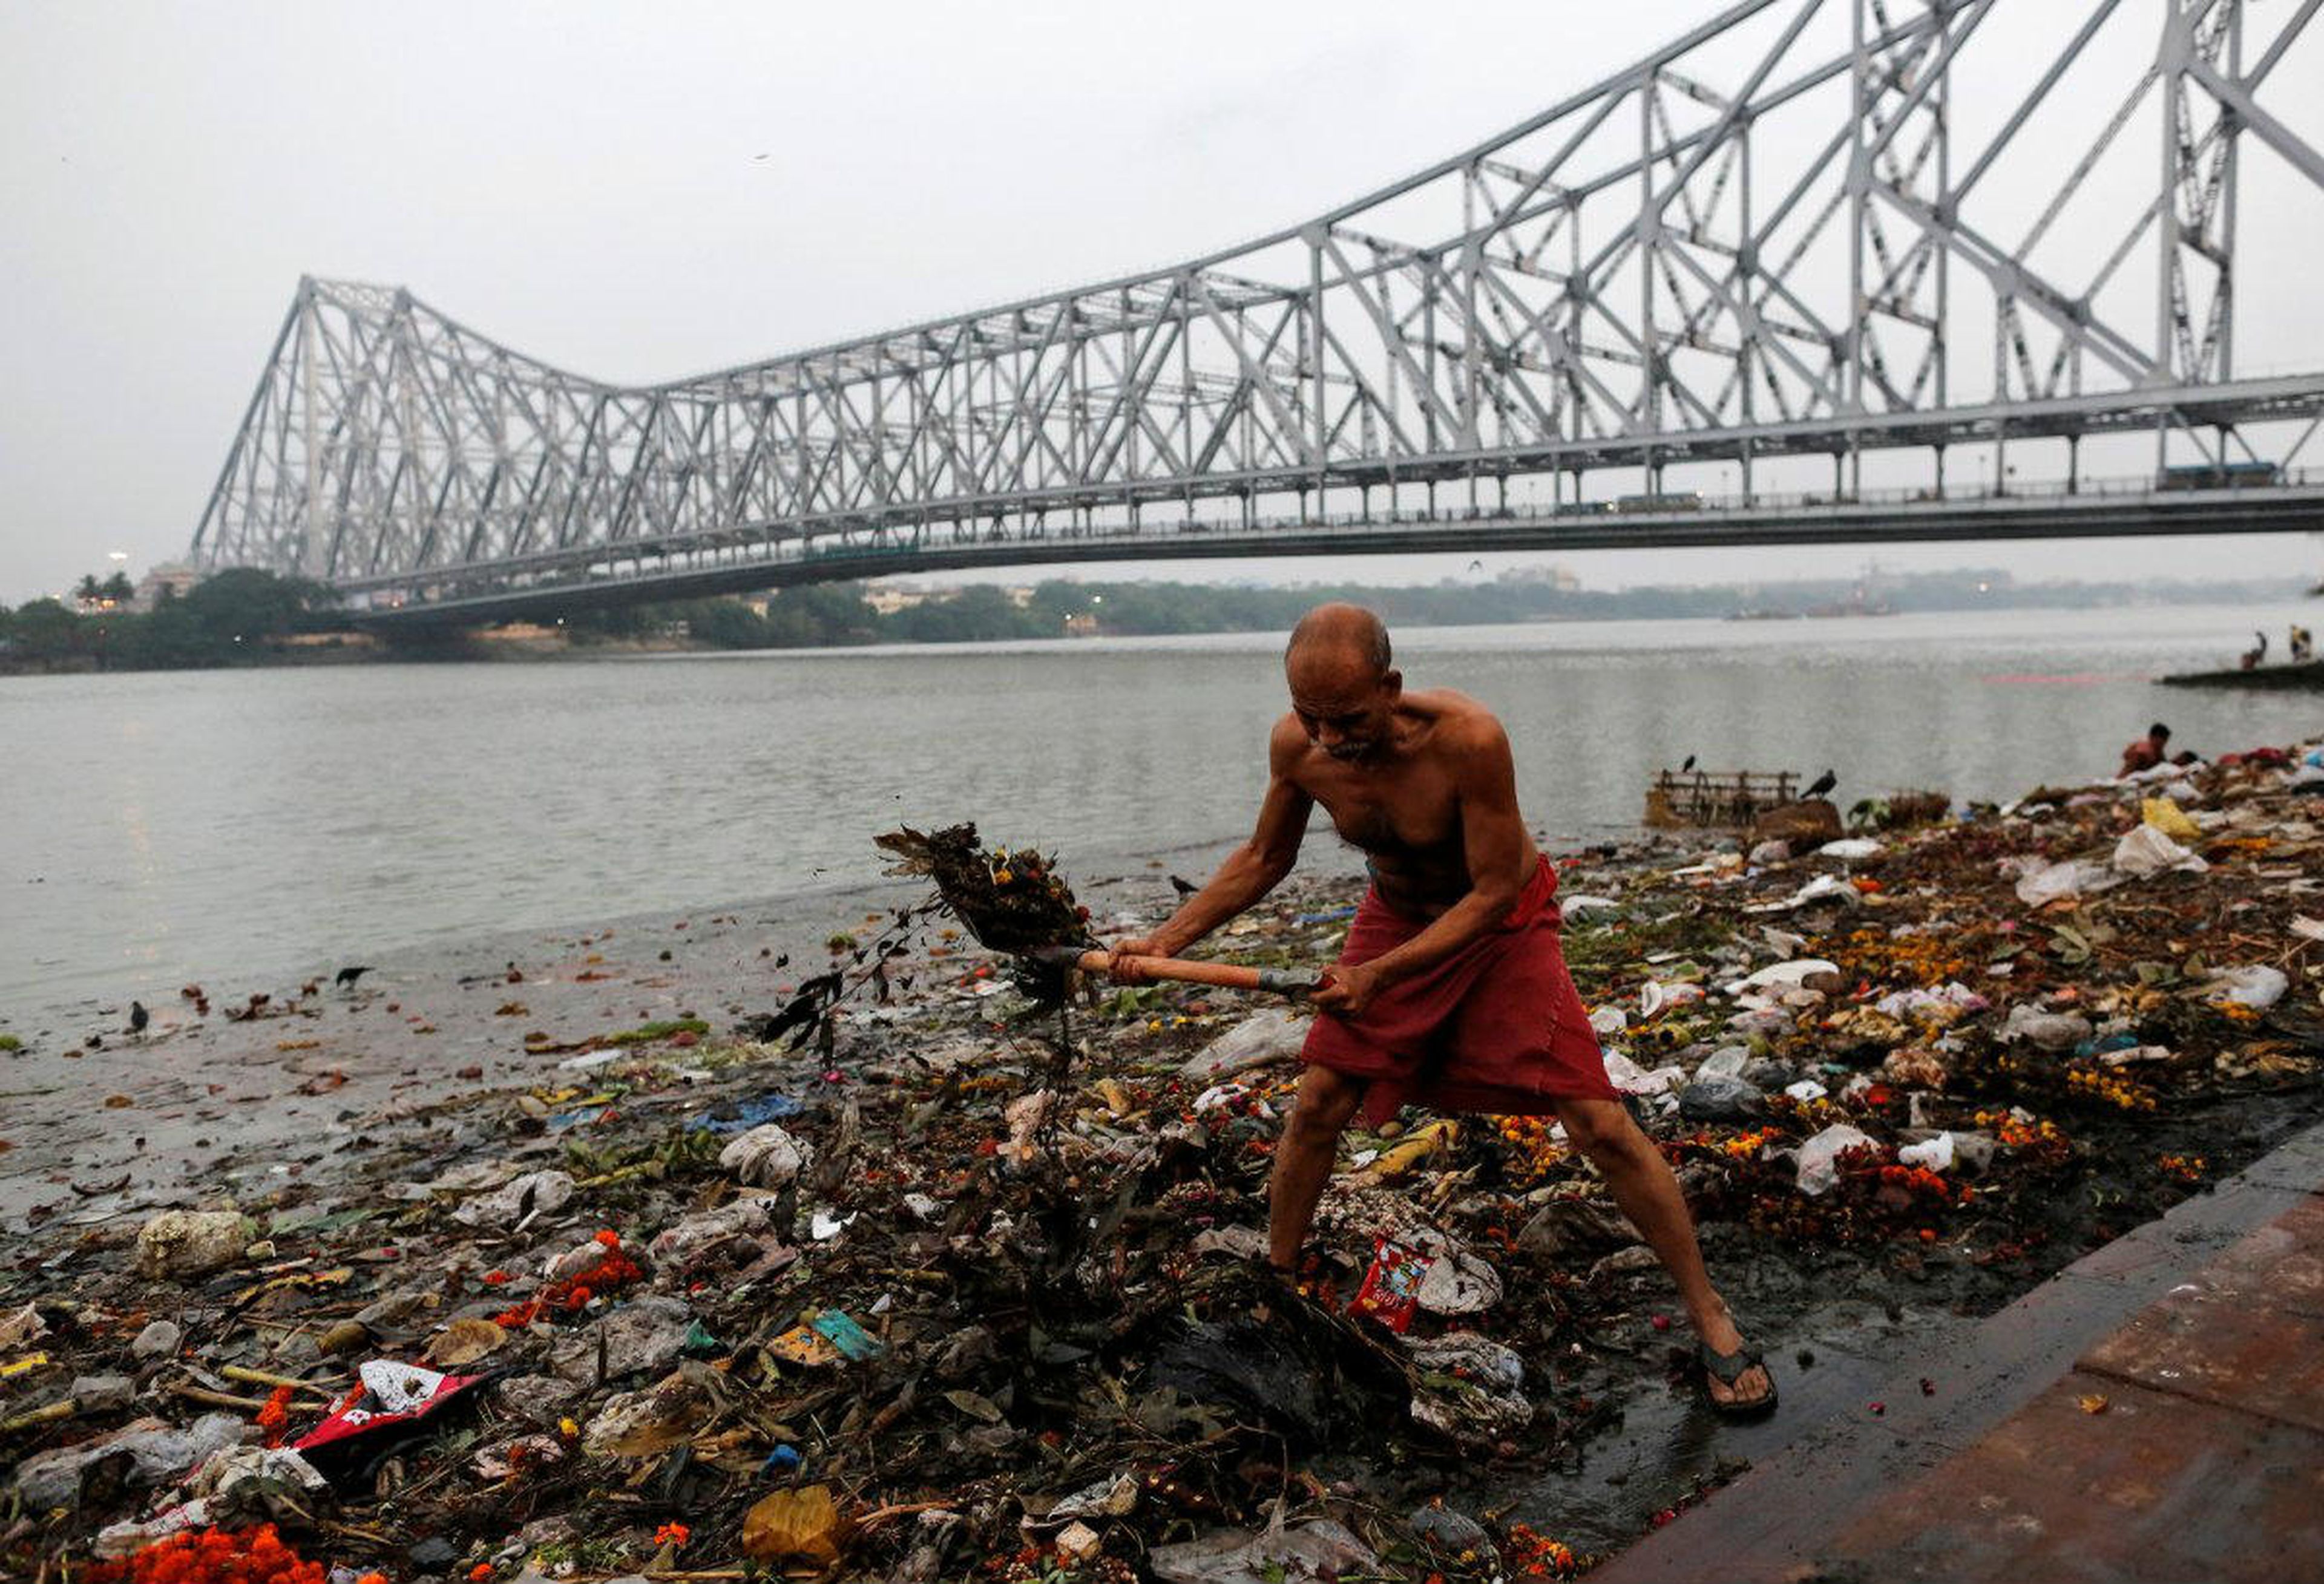 Las fotos más impactantes de la contaminación del río Ganges, en India |  Business Insider España